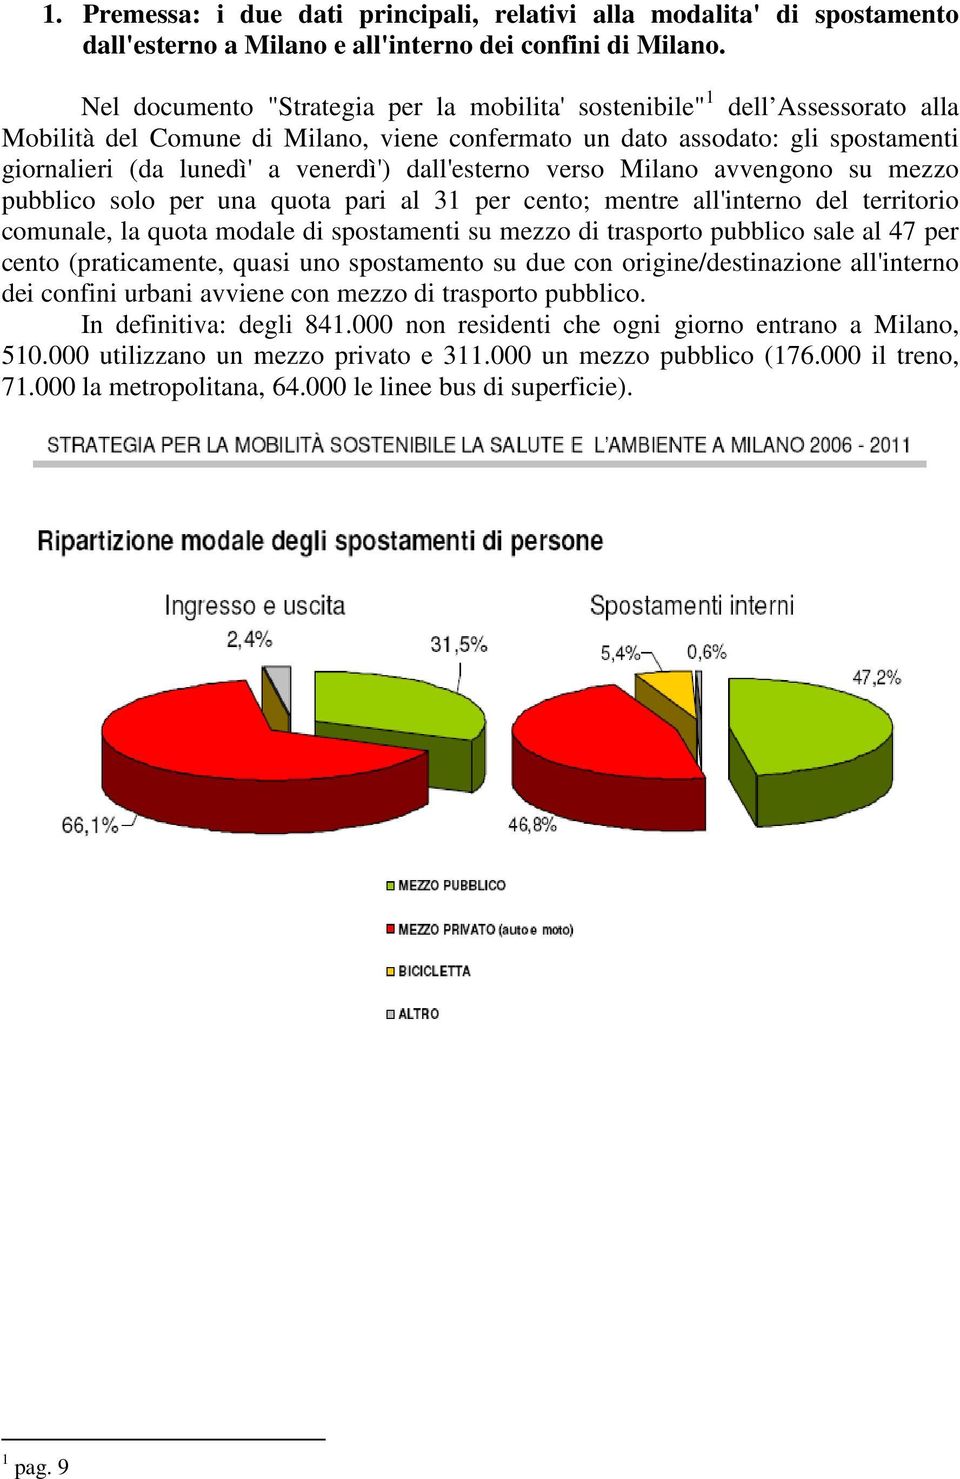 dall'esterno verso Milano avvengono su mezzo pubblico solo per una quota pari al 31 per cento; mentre all'interno del territorio comunale, la quota modale di spostamenti su mezzo di trasporto